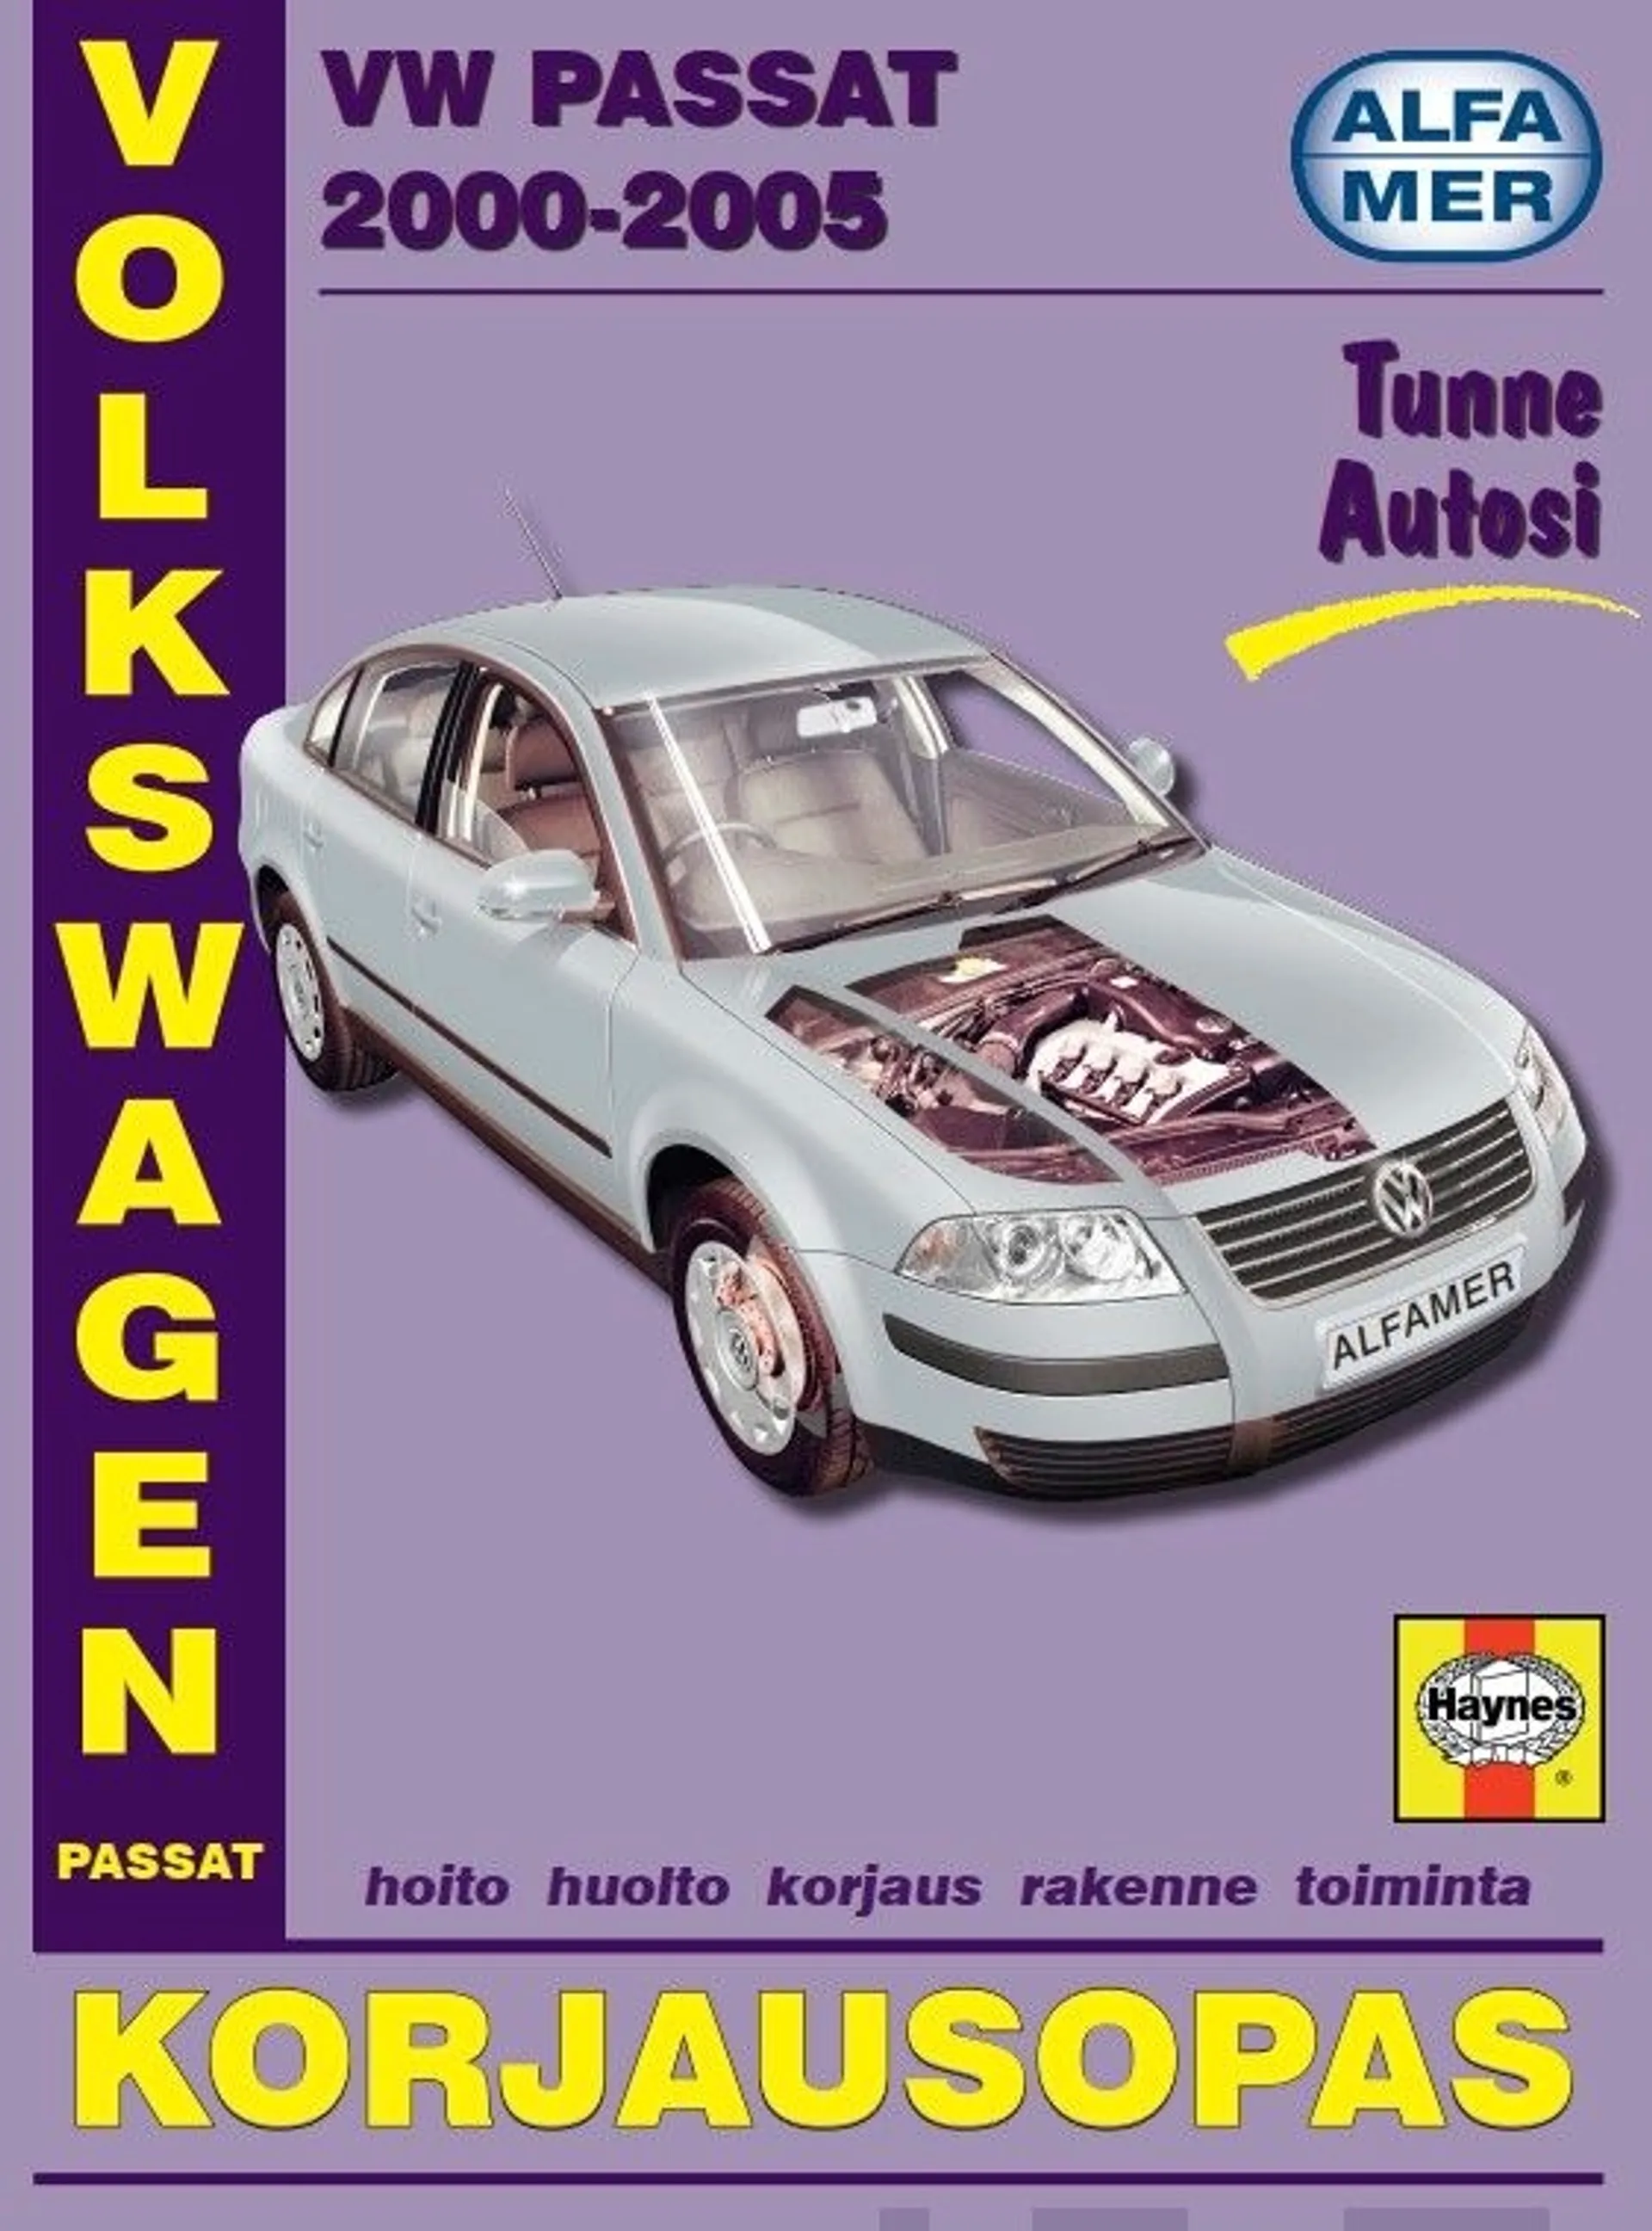 VW Passat 2000-2005 - Korjausopas